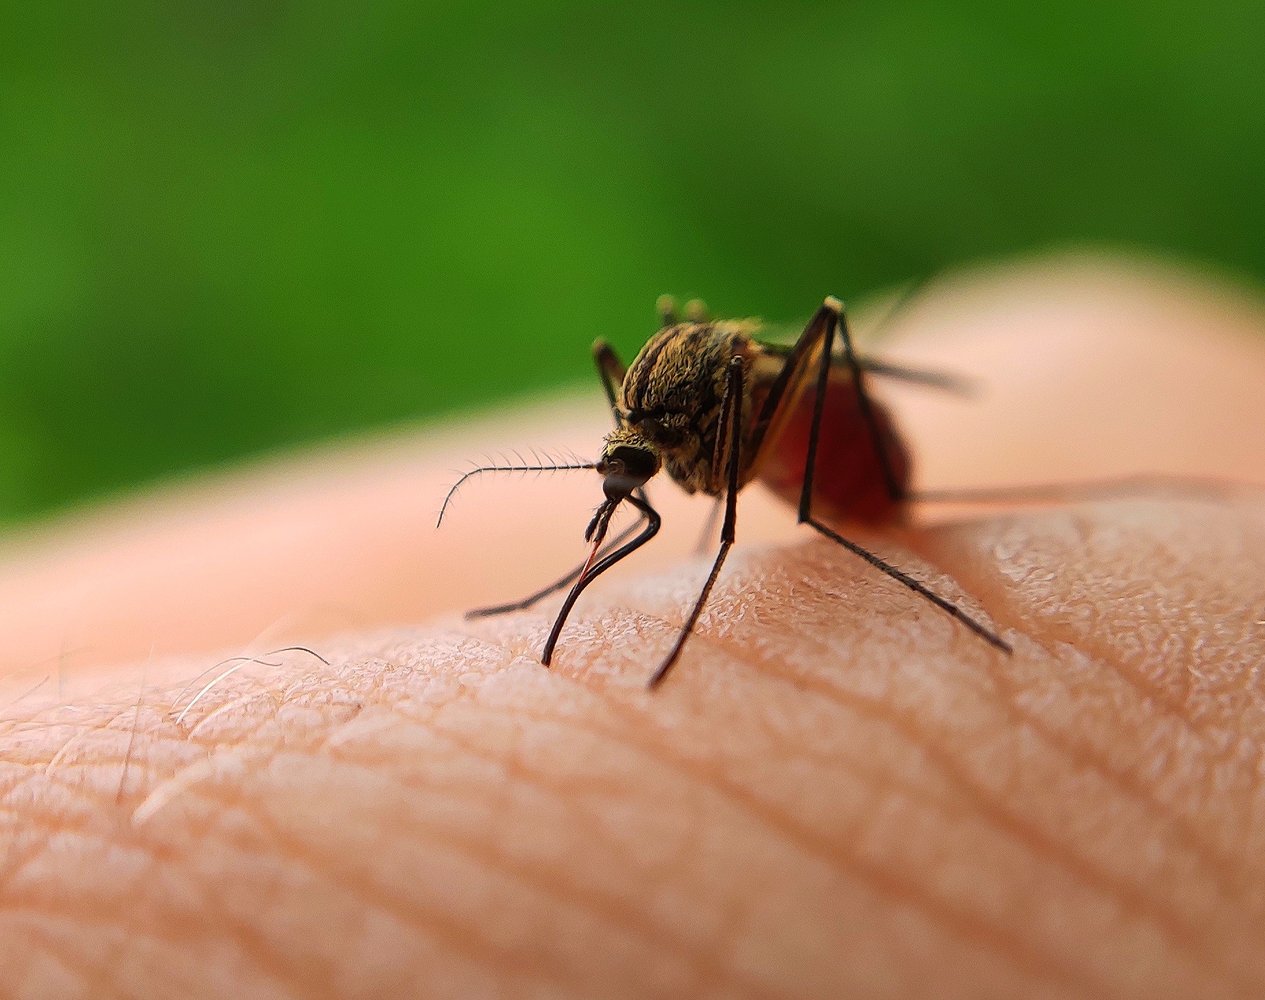 Как бороться с комарами? Отвечает биолог